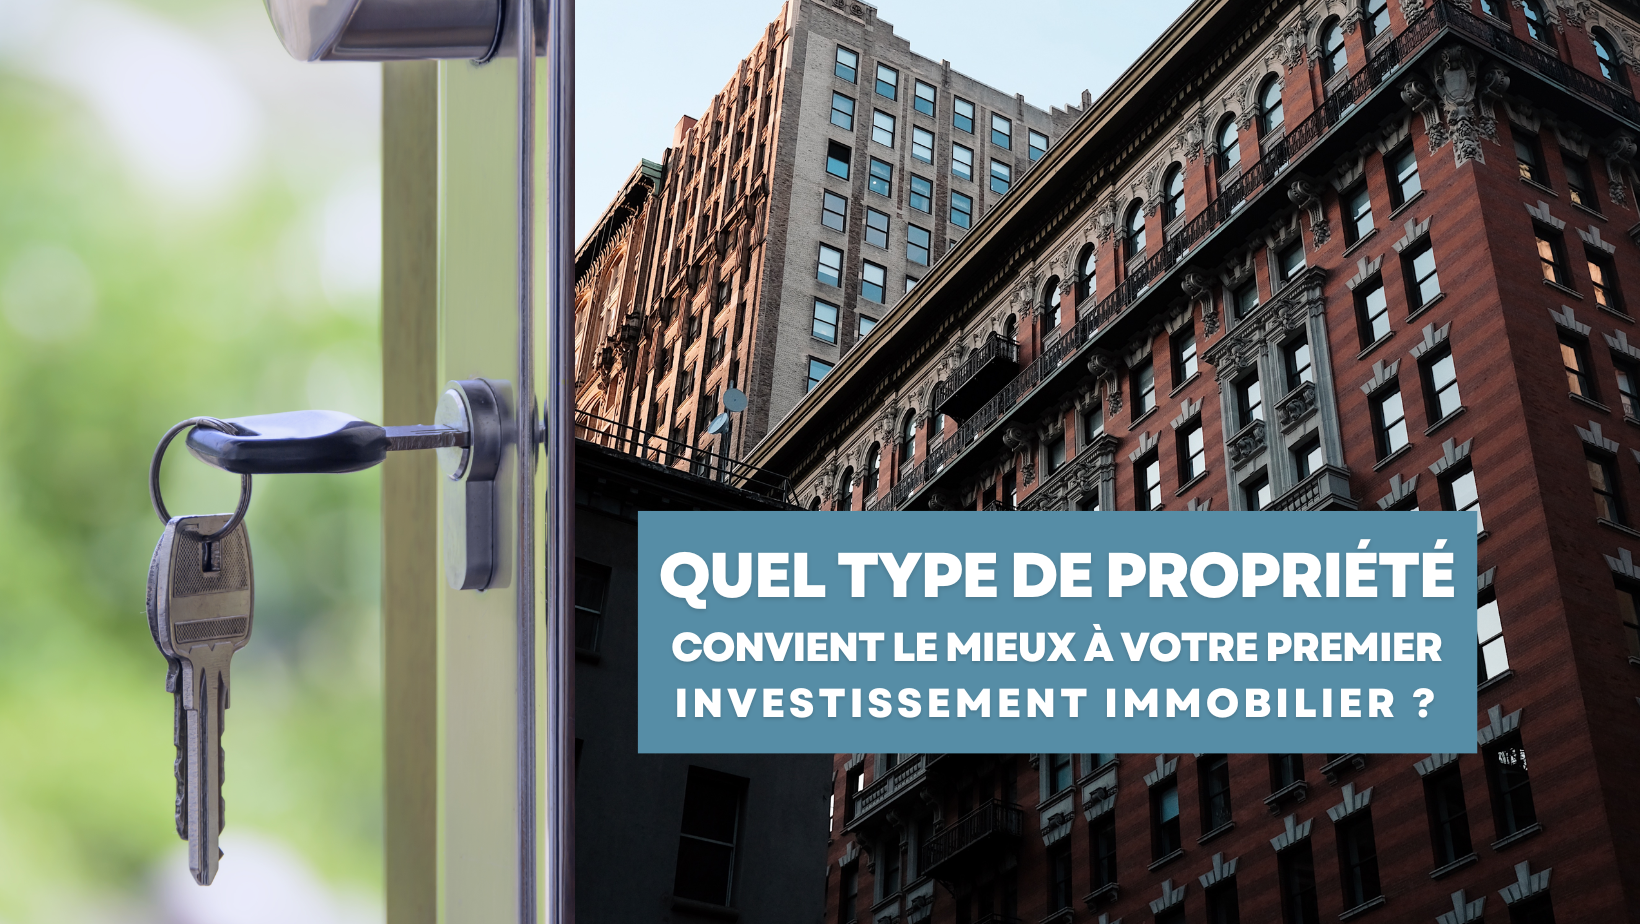 Quel type de propriété convient le mieux à votre premier investissement immobilier ?